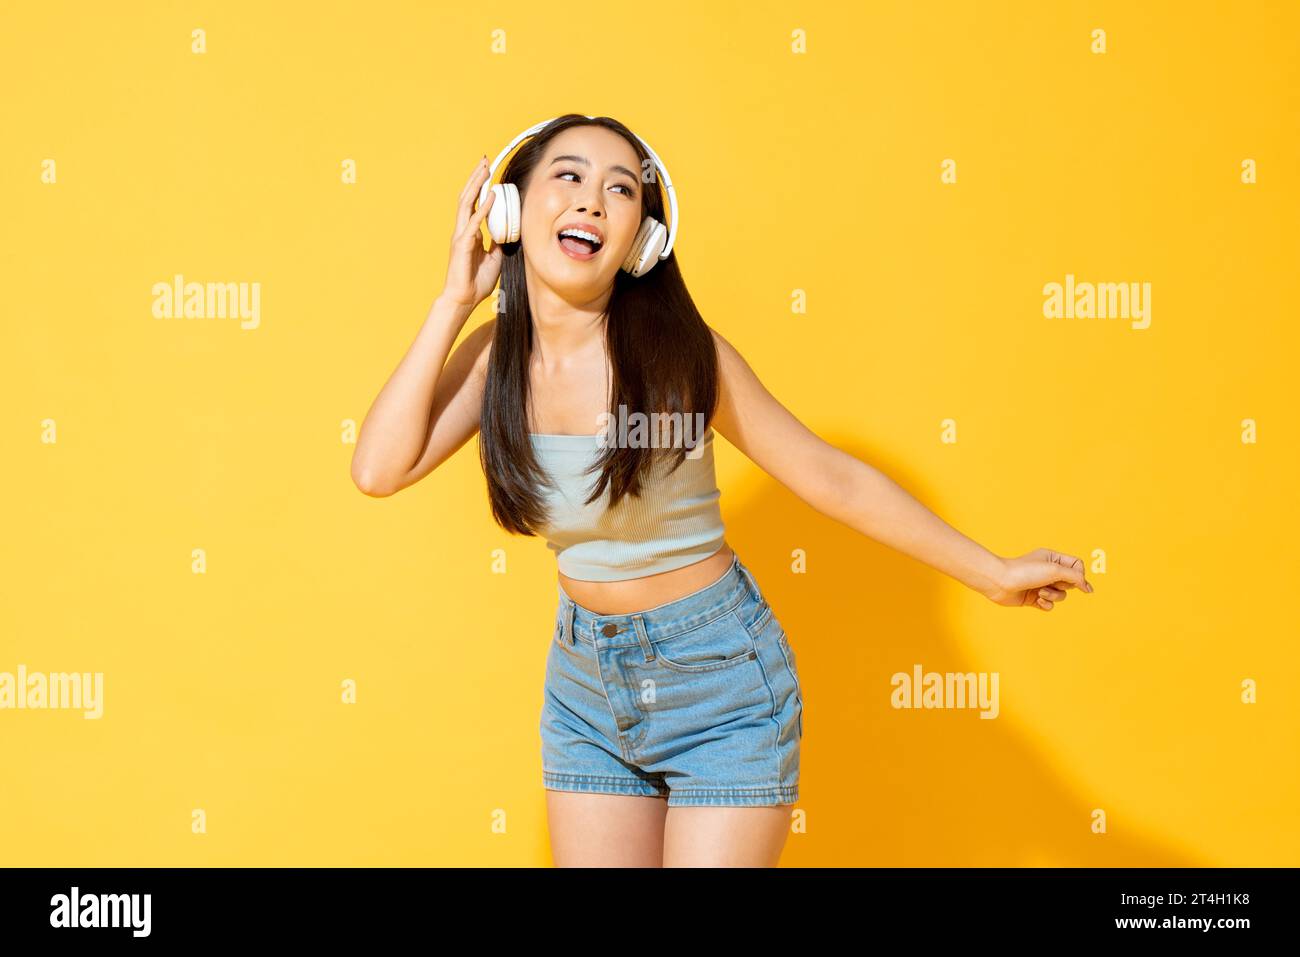 Junge hübsche asiatische Frau, die Kopfhörer trägt, Musik hört und tanzt im gelben Hintergrund des Studios Stockfoto